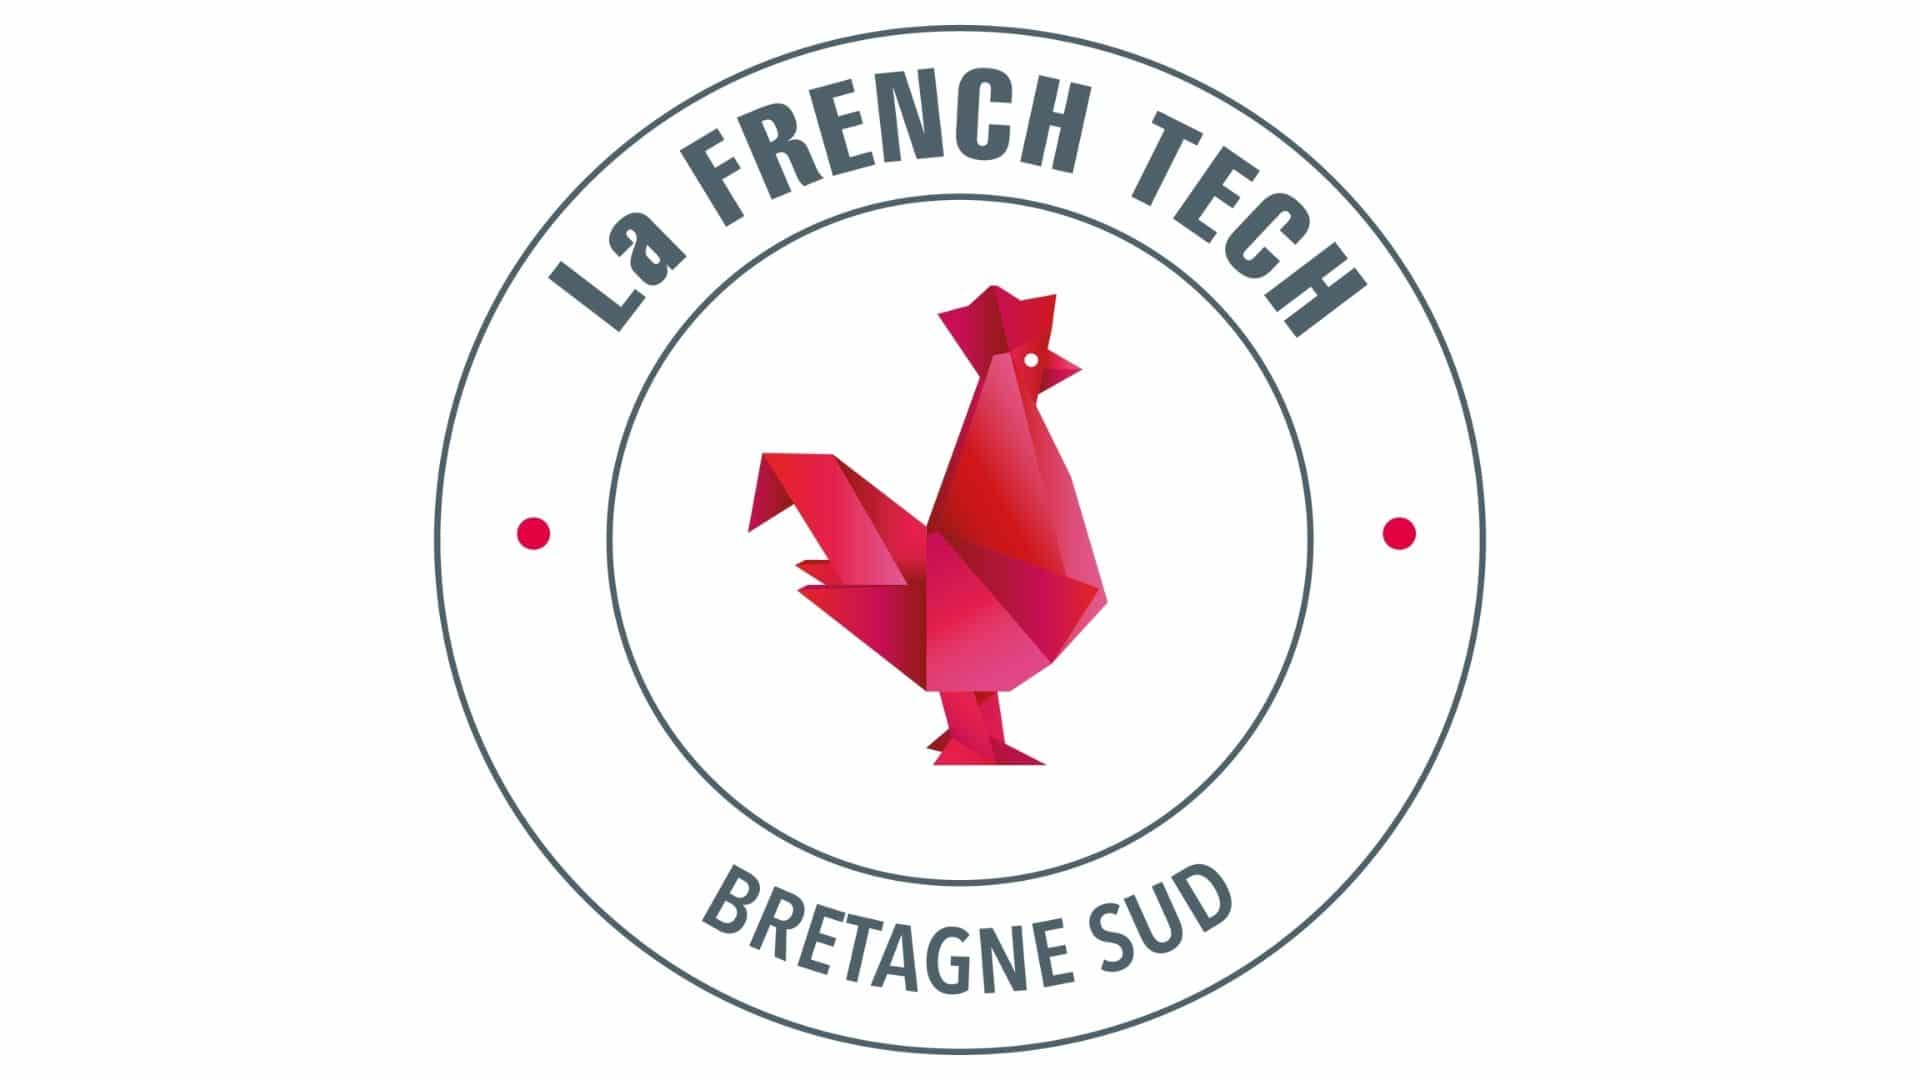 French Tech Bretagne Sud  